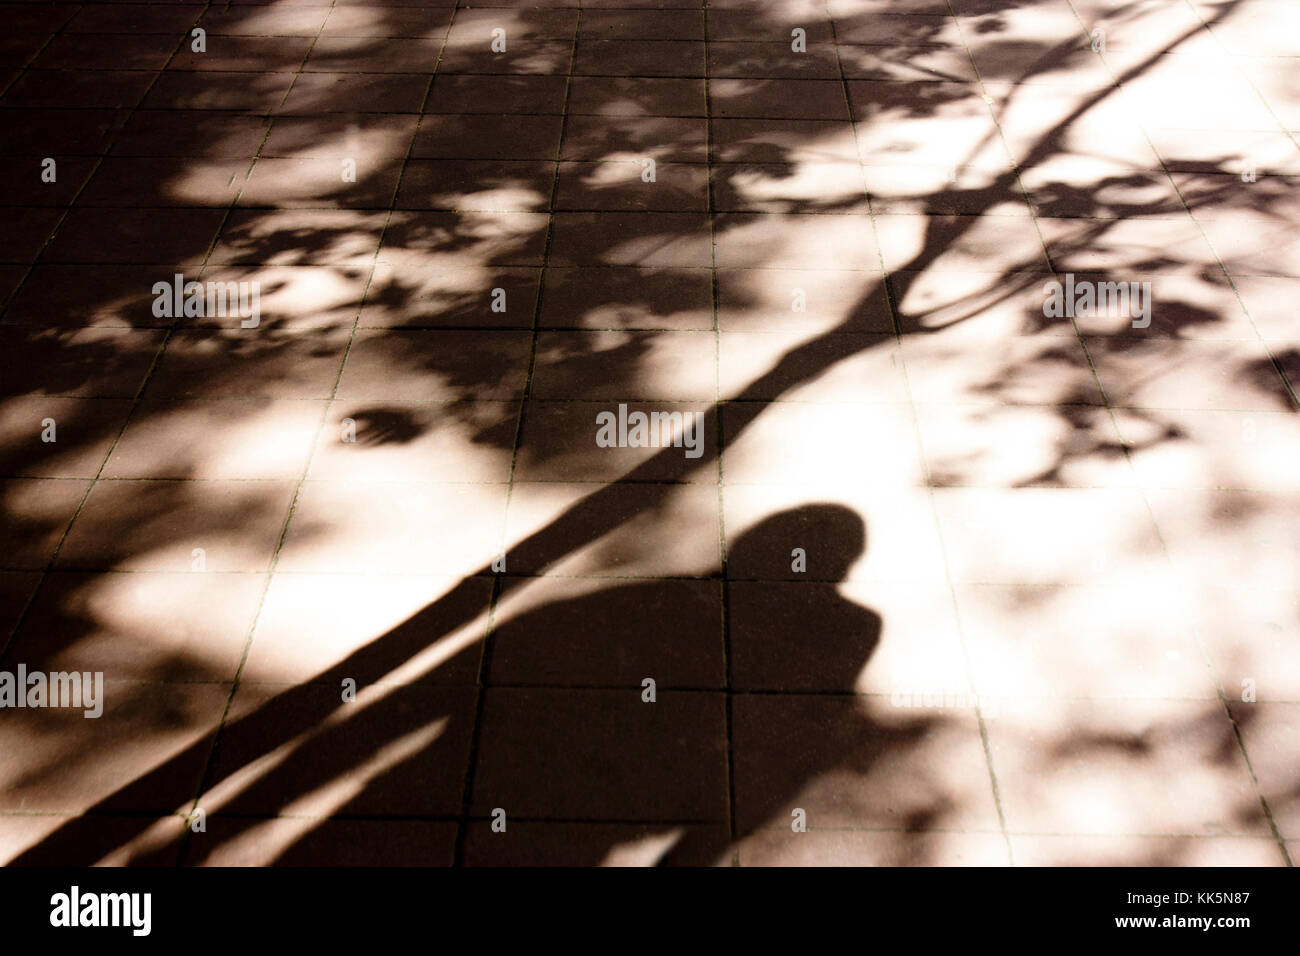 Verschwommene Schatten und Silhouetten von einer Person, die unter dem Baum in Schwarz und Weiß sepia Sonnenlicht auf Stadt Straße Bürgersteig Stockfoto